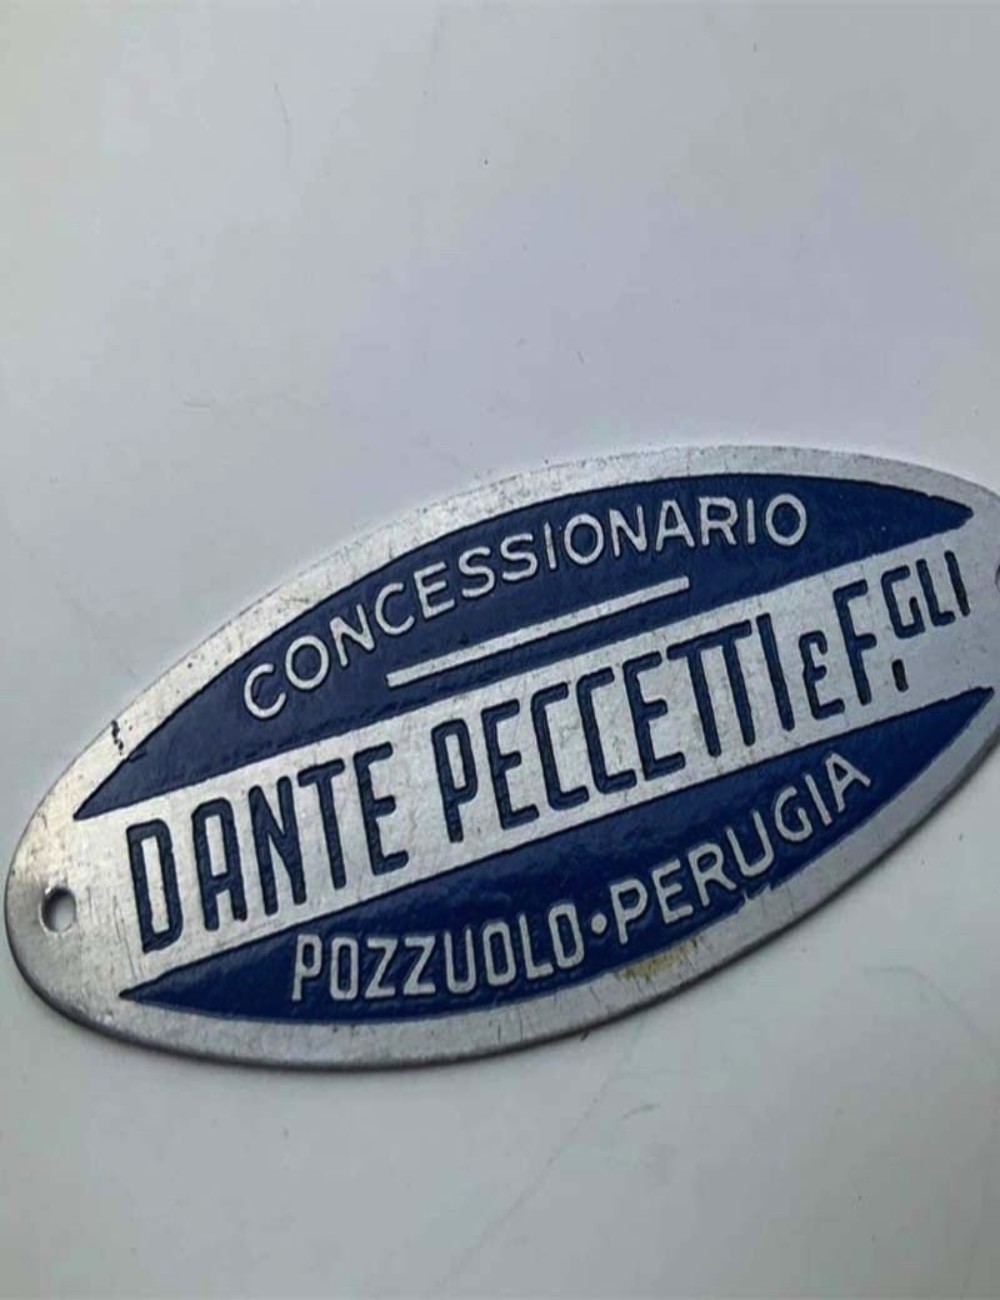 Targhetta concessionario Dante Peccetti. 5 cm